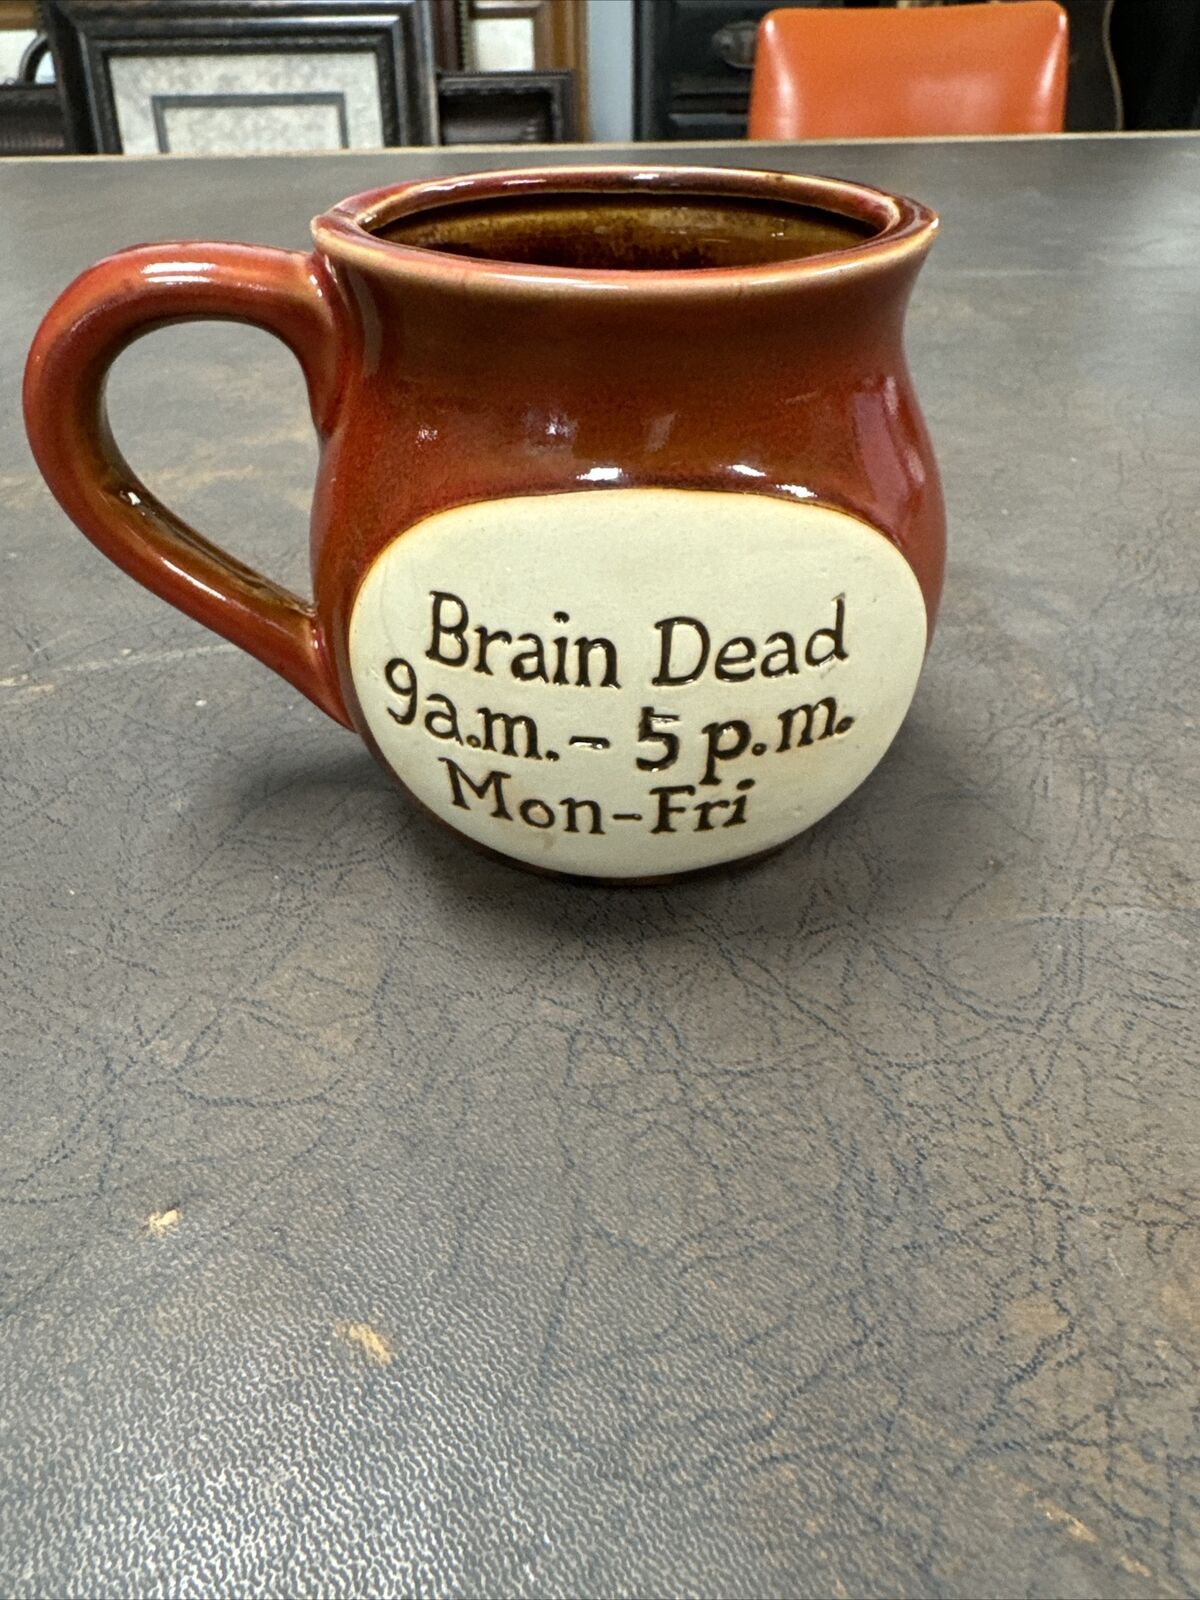 Brain Dead 9a.m. - 5 p.m. Mon-Fri Mug